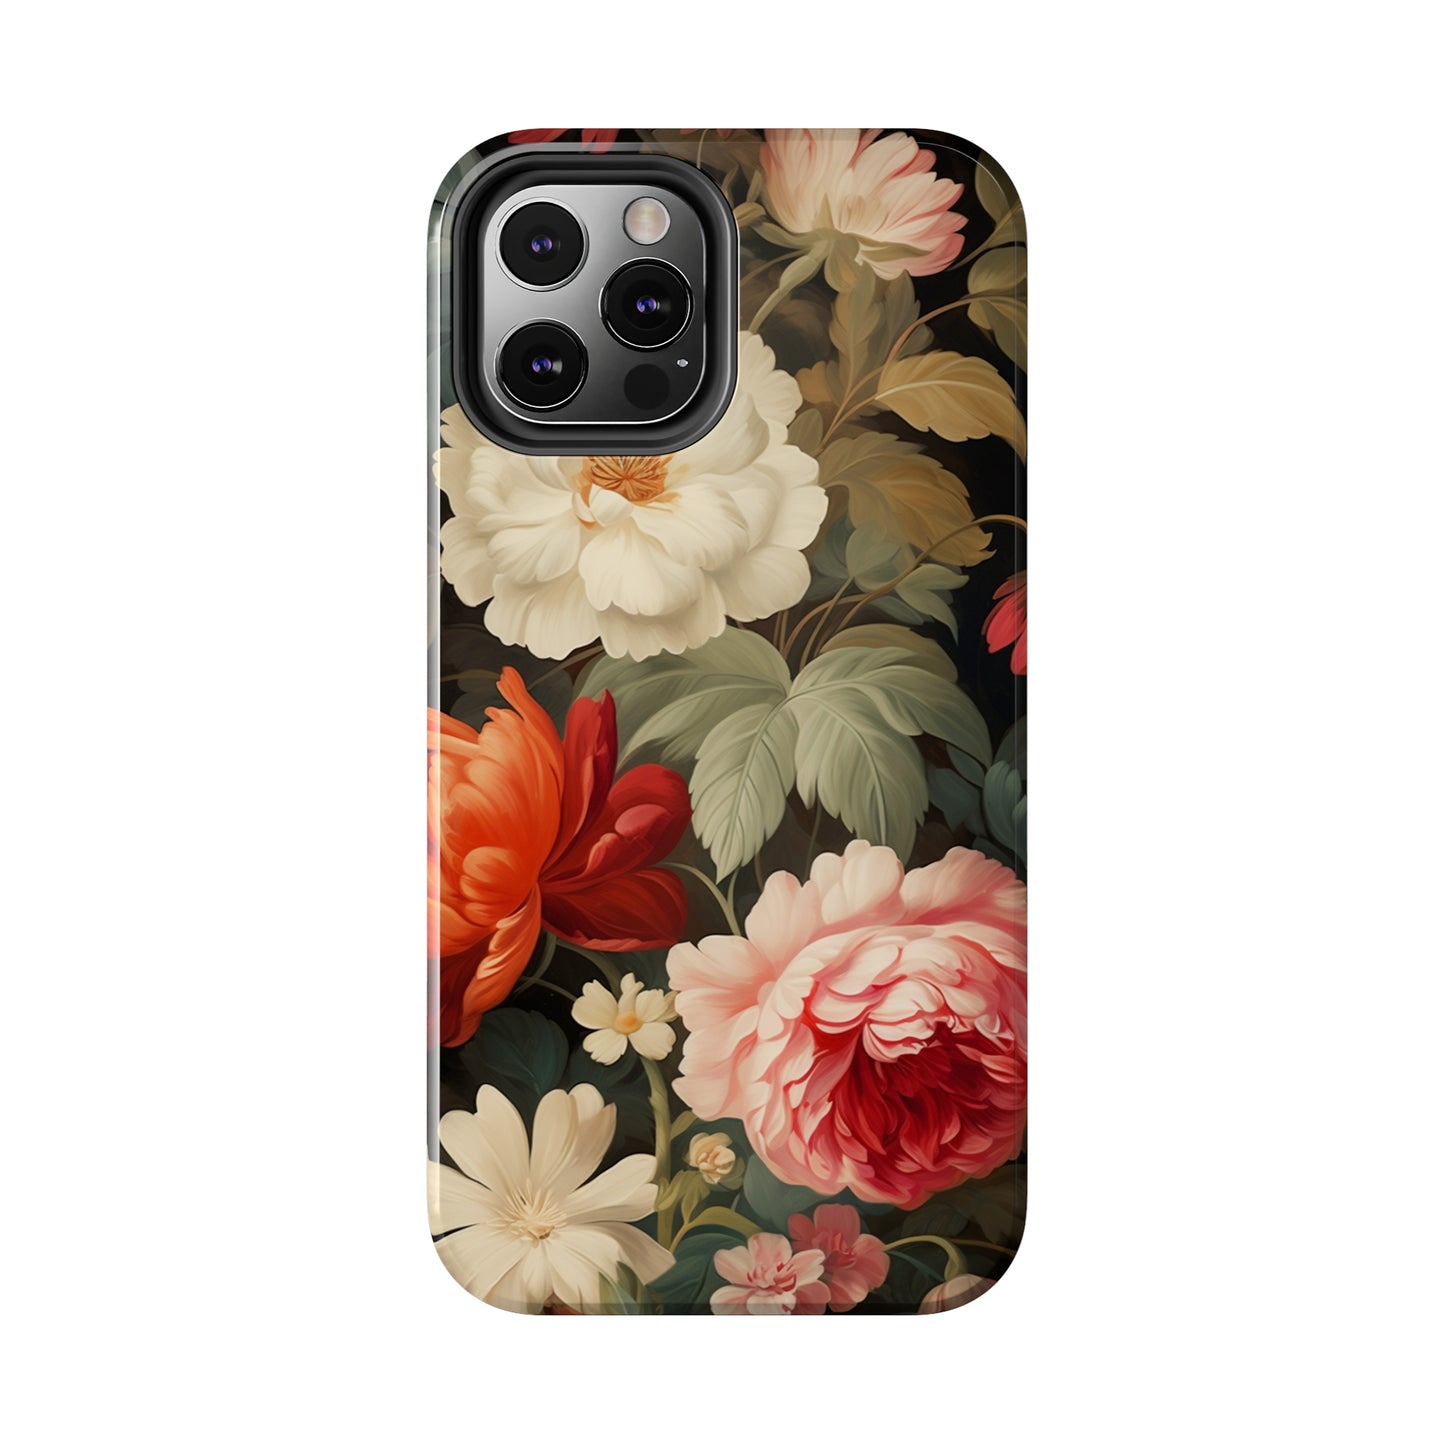 Antique Floral Print iPhone 11 case